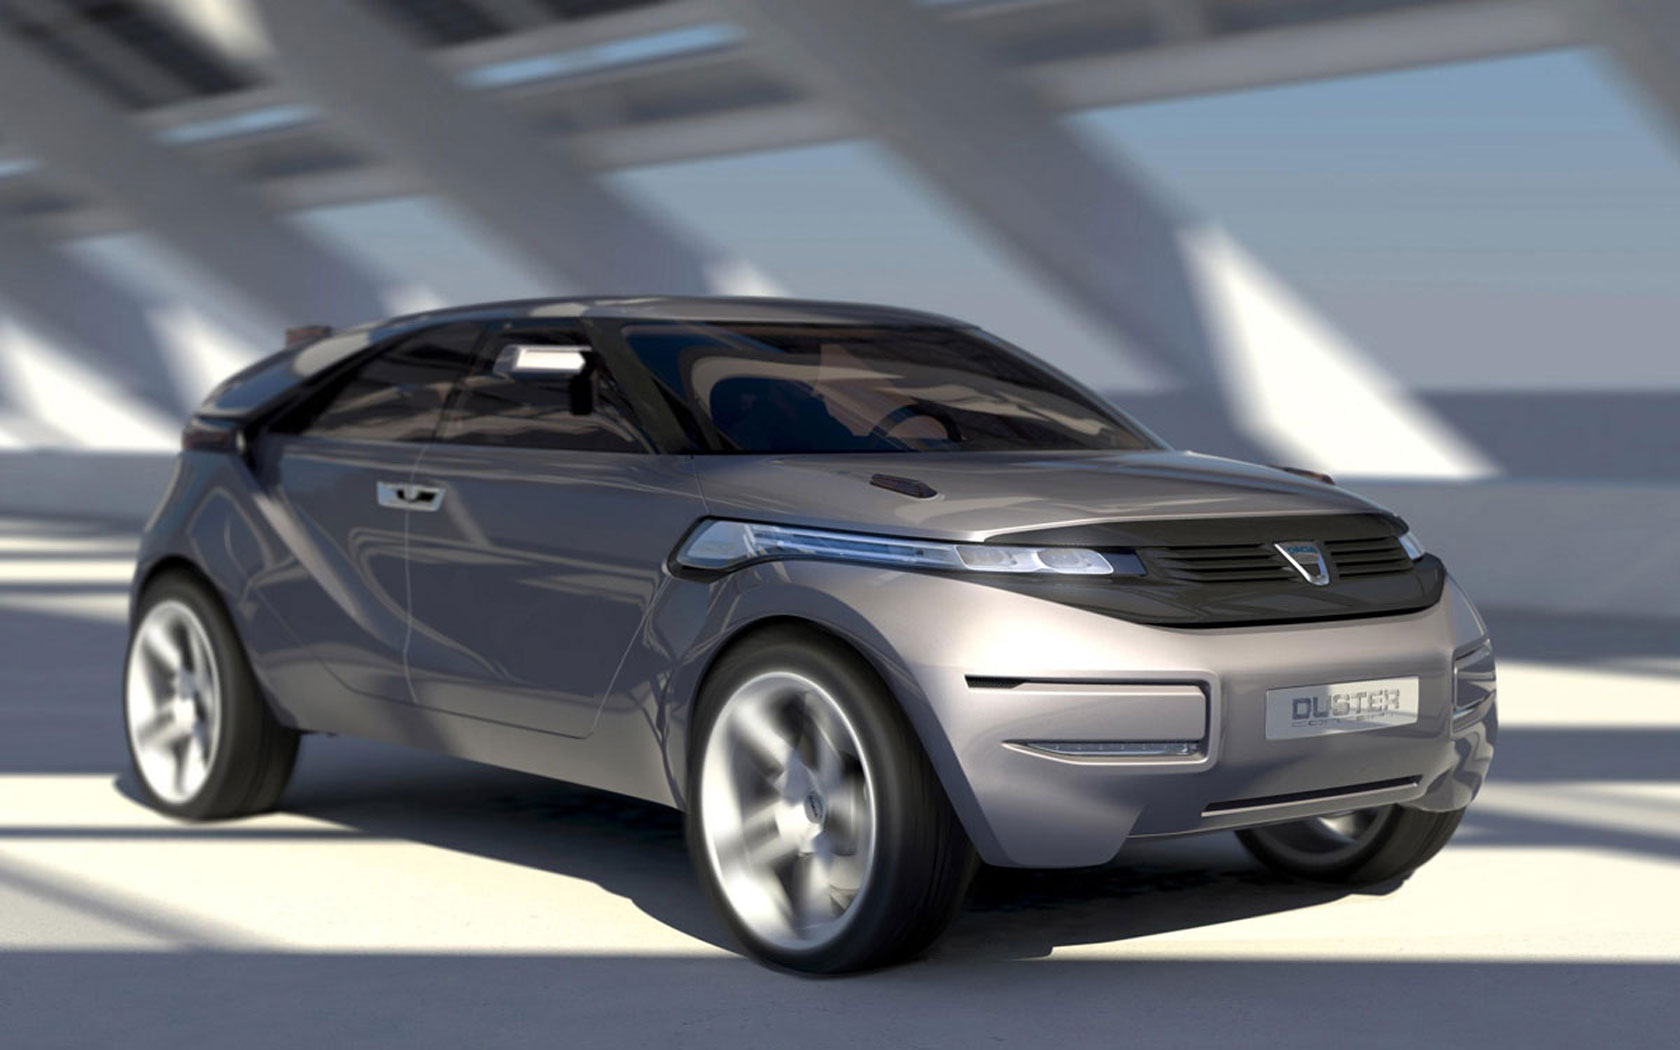  Dacia Duster Concept 